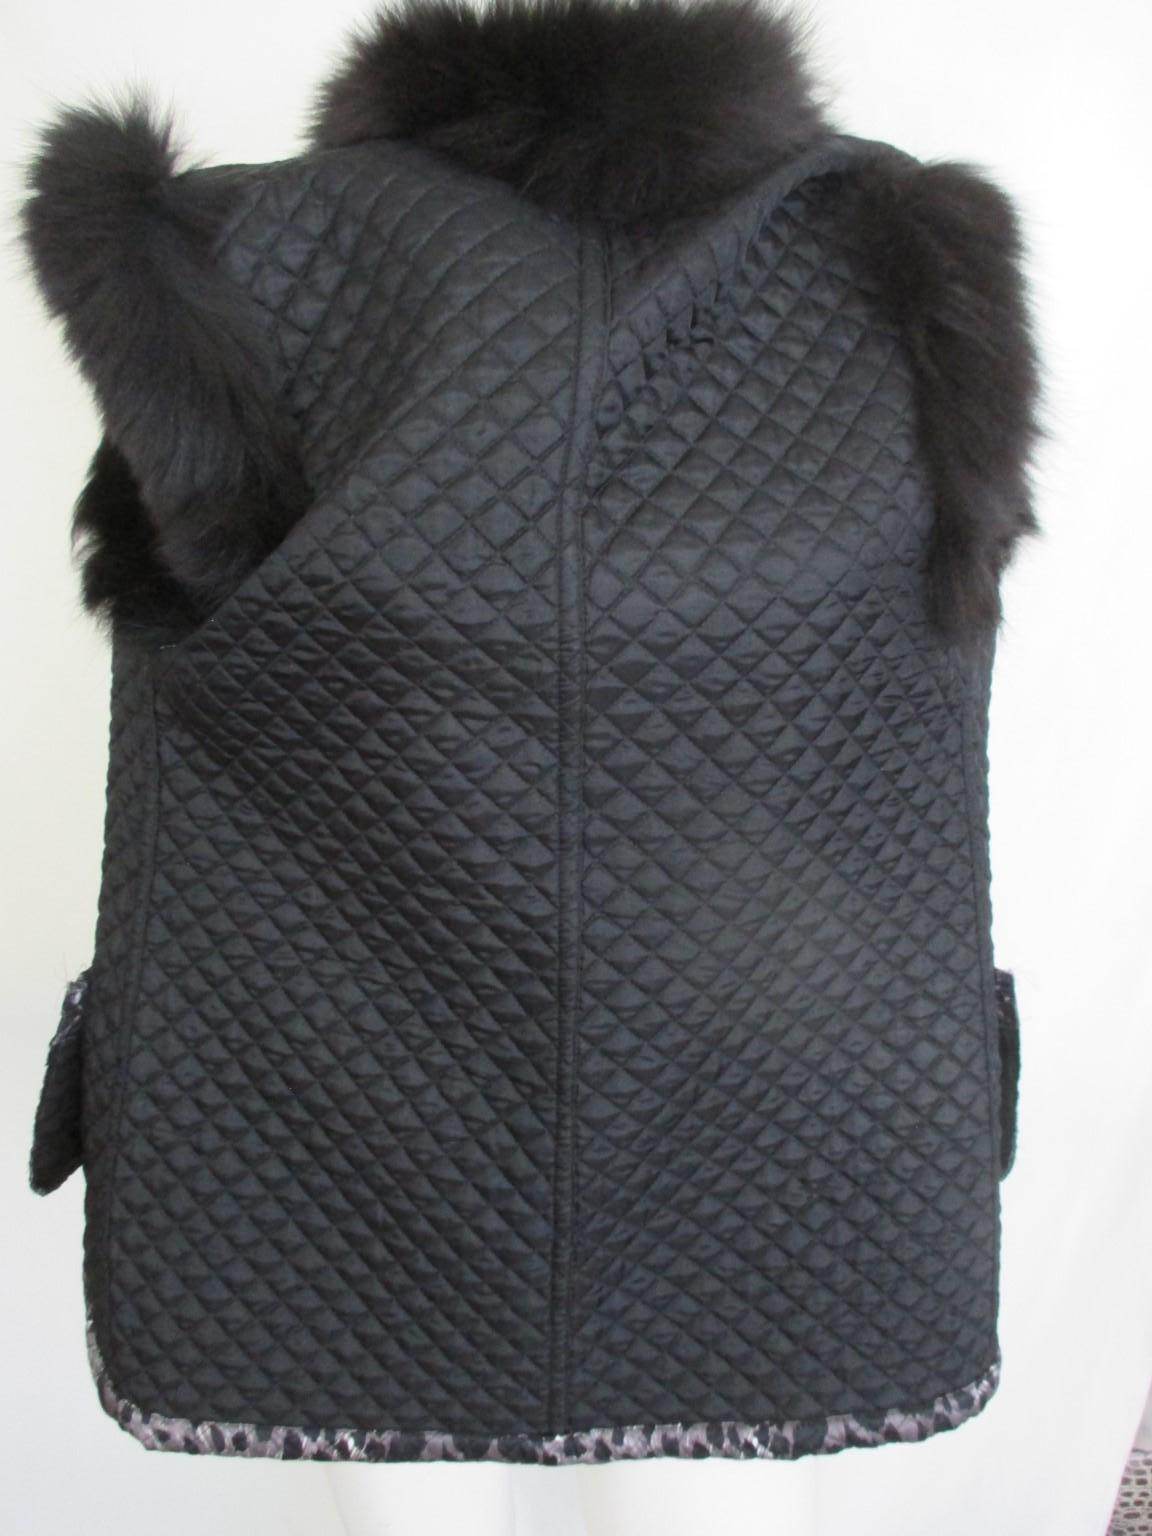 Black Leopard Print Vest with Black Fox fur For Sale 1